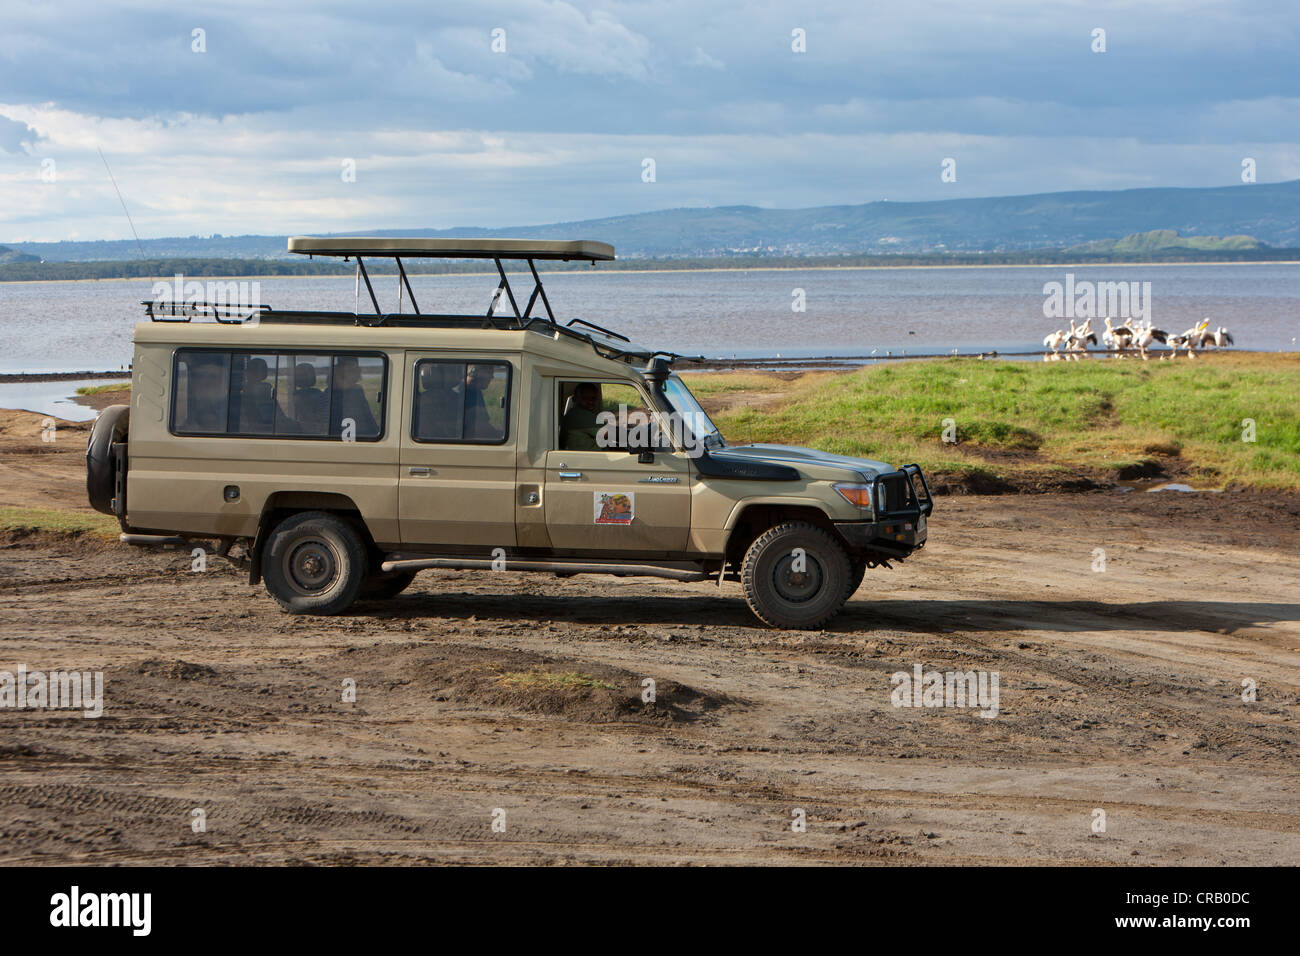 Un groupe de pélicans d'être observé à partir d'un véhicule hors route, parc national du lac Nakuru, Kenya, Afrique de l'Est, Afrique, PublicGround Banque D'Images